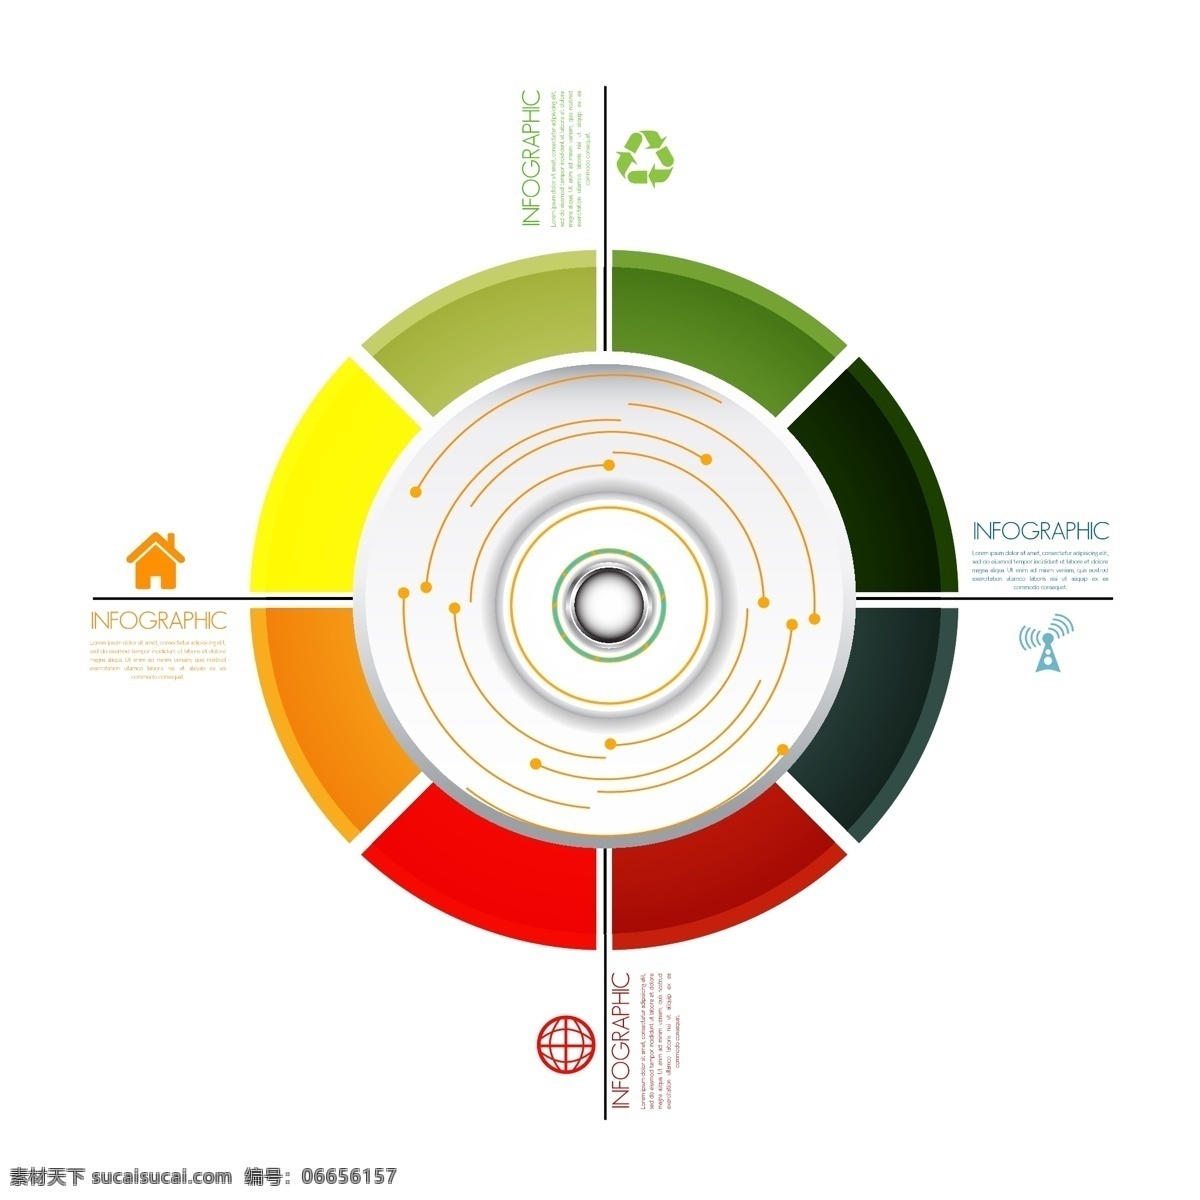 彩色圆环图表 彩色 圆环 目录设计 立体图表 图表 图表设计 办公学习 生活百科 矢量素材 白色